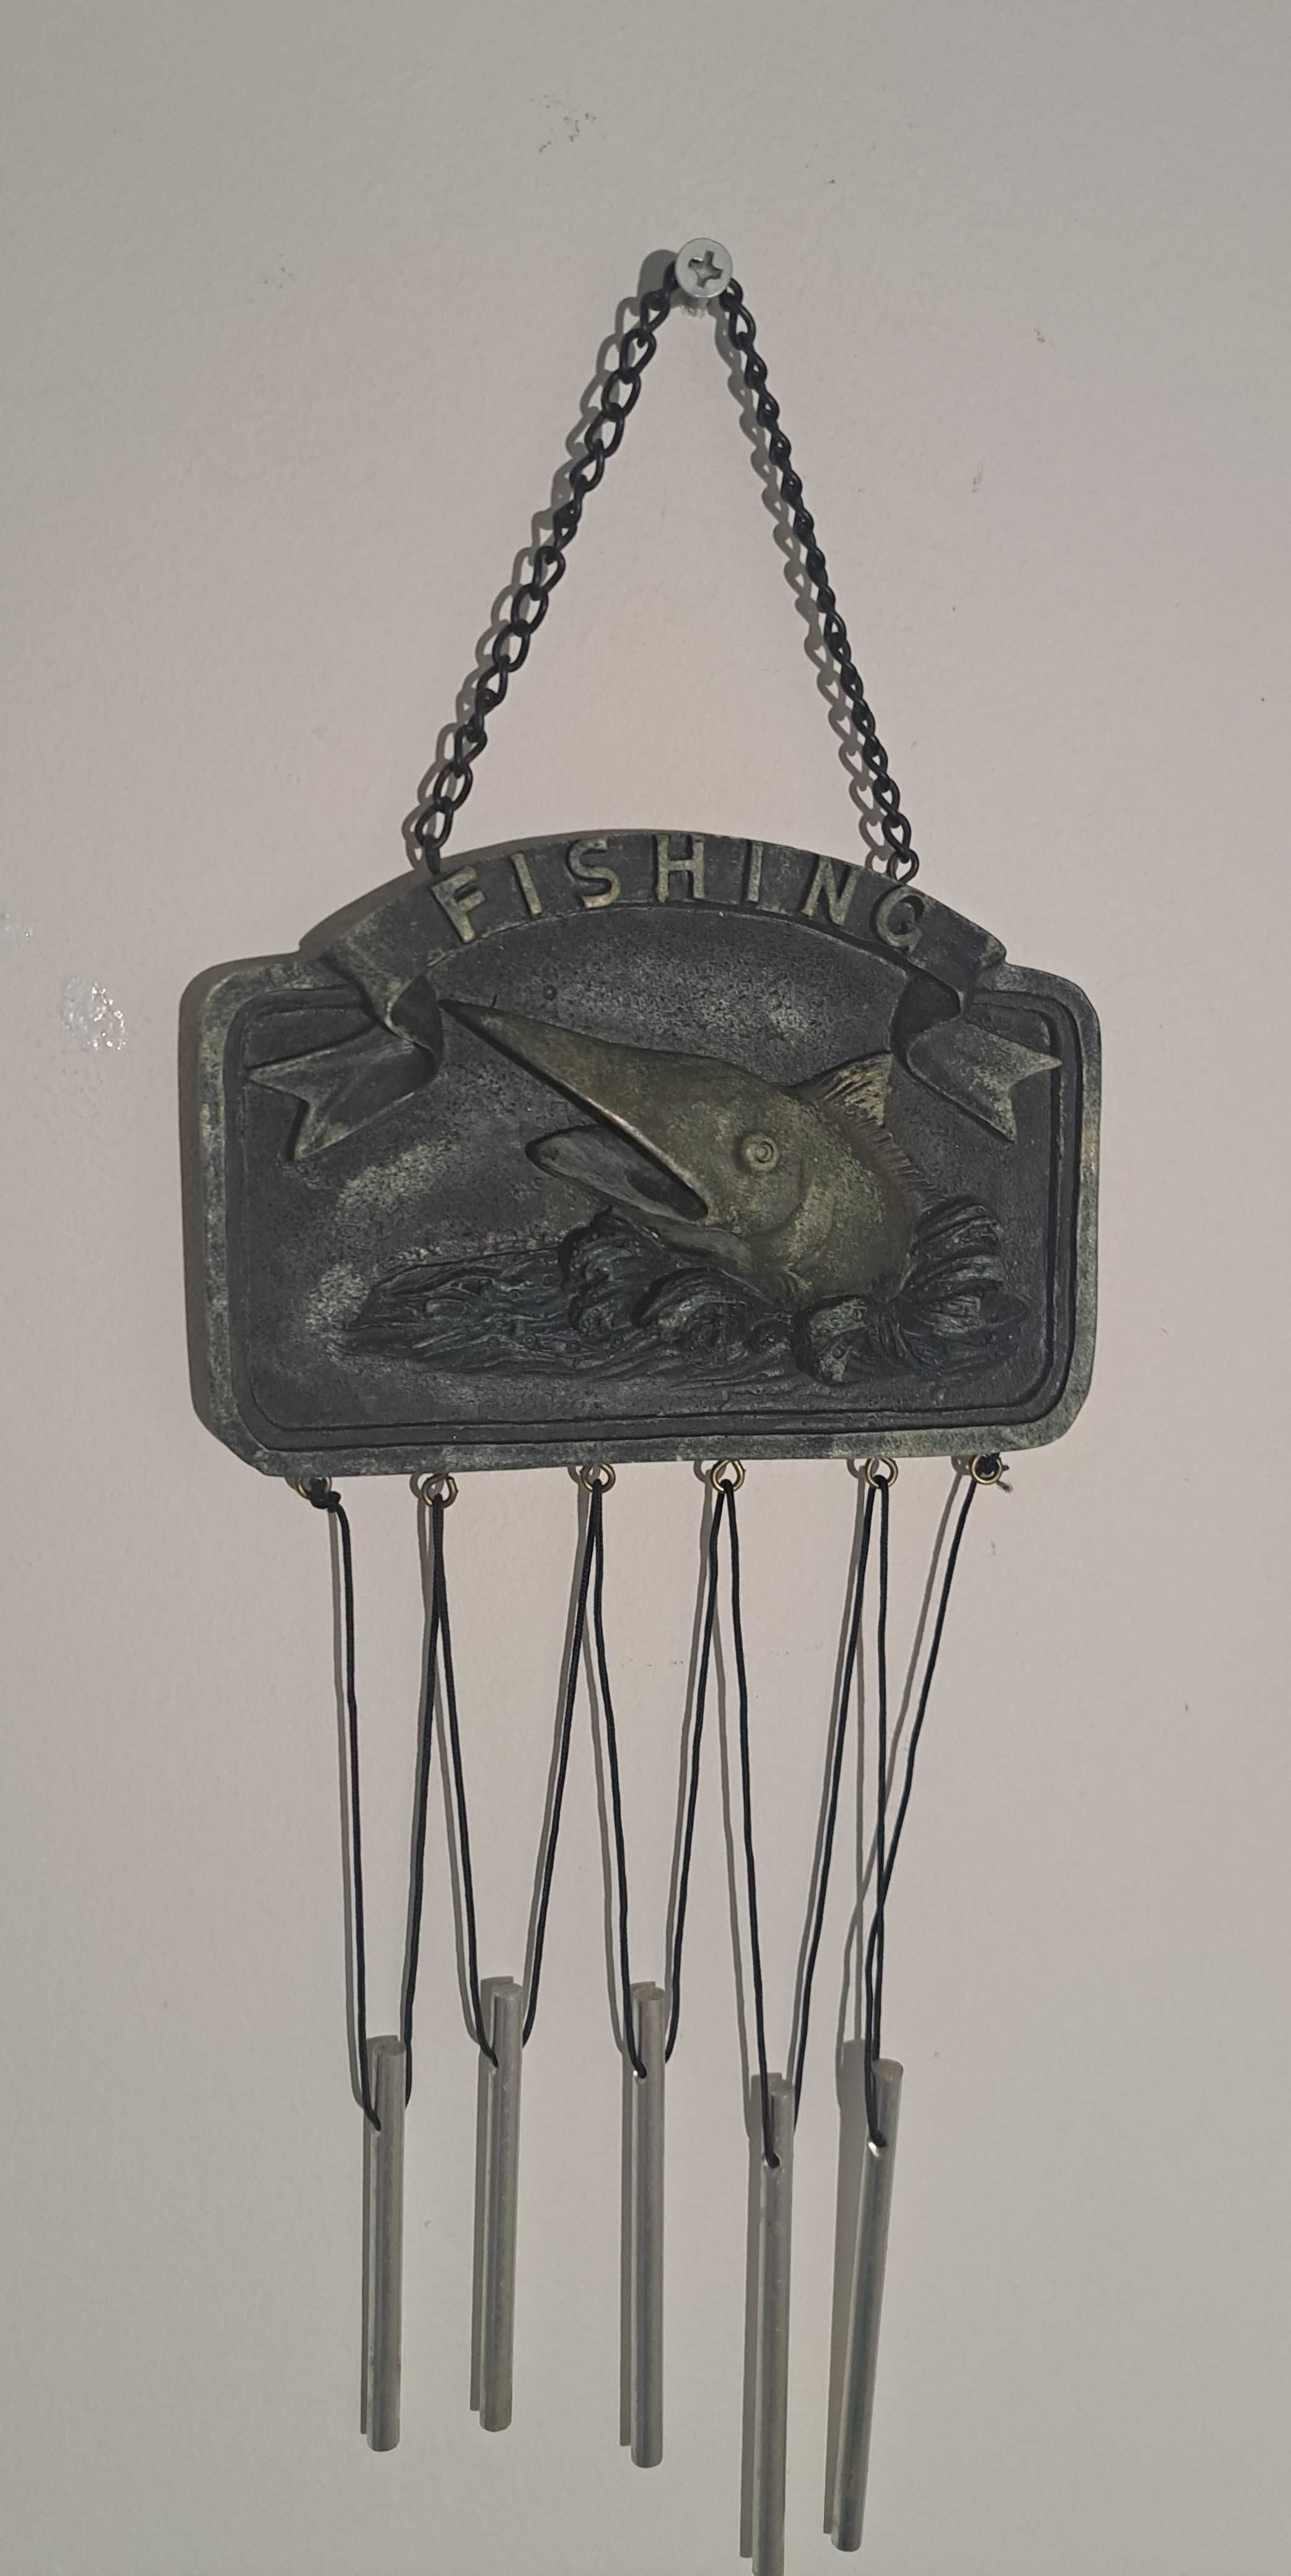 dzwoneczki szkockie - dekoracja Fishing